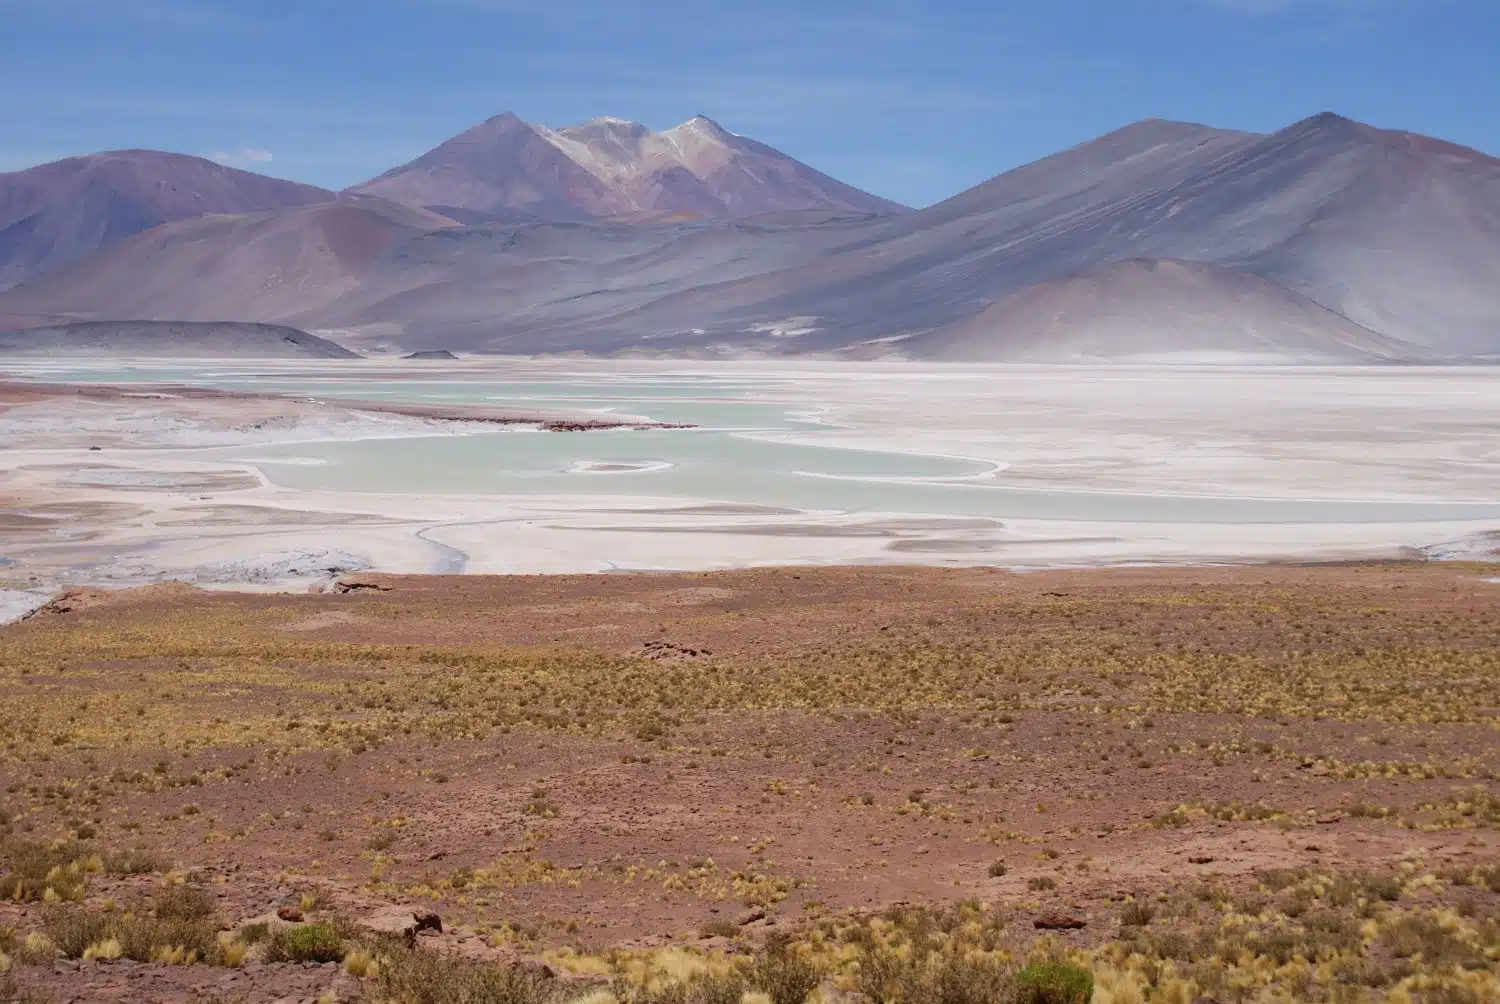 Atacama Desert Photos - Ten Incredible Landscapes from the Atacama Desert in Chile including Salar de Talar